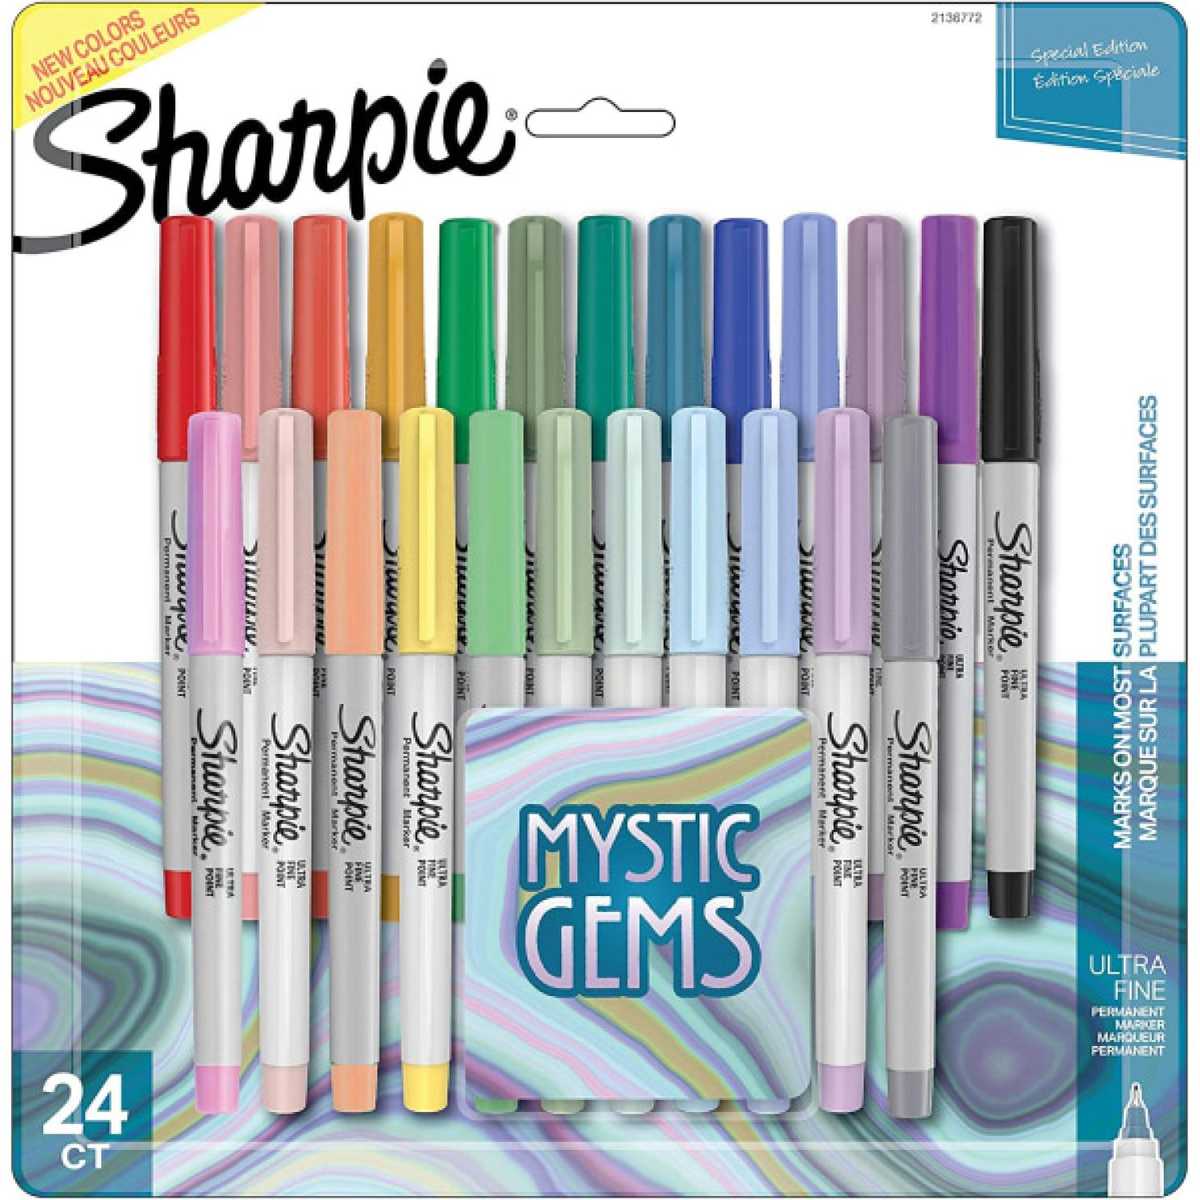 Crayola Metallic Crayons (24 ct) Delivery - DoorDash